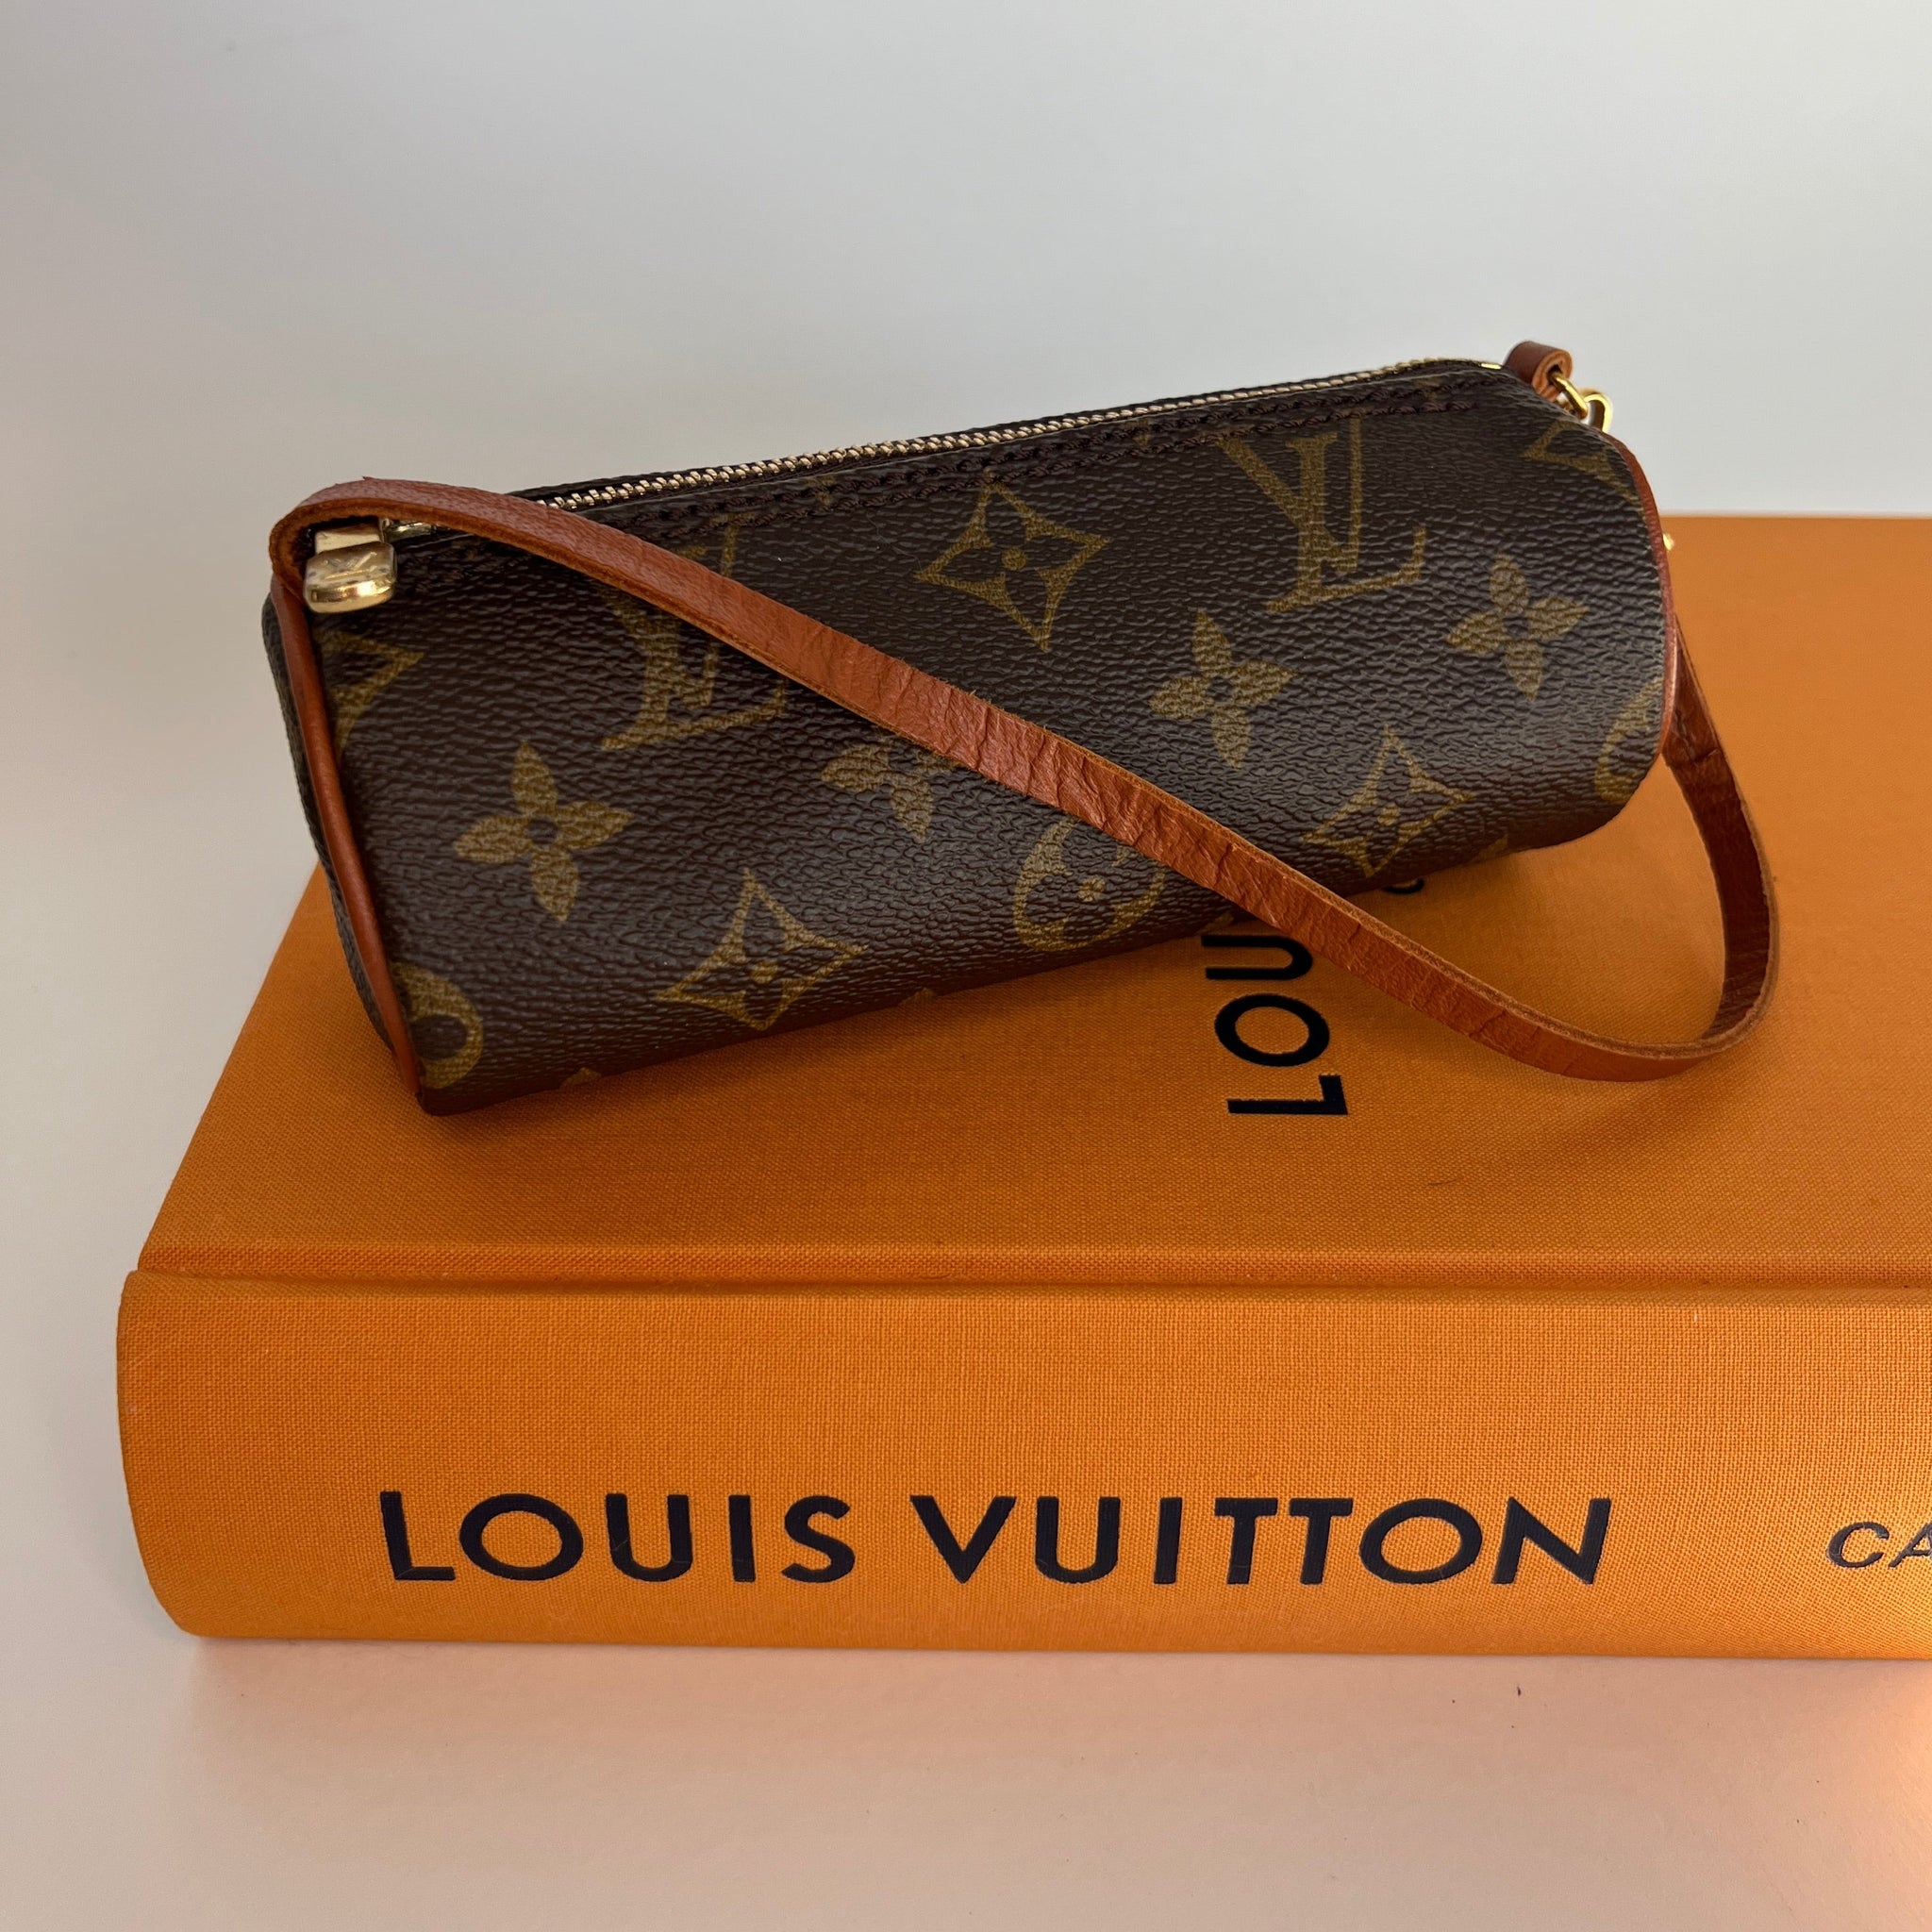 Authentic Louis Vuitton Speedy 30 – VTG LUX